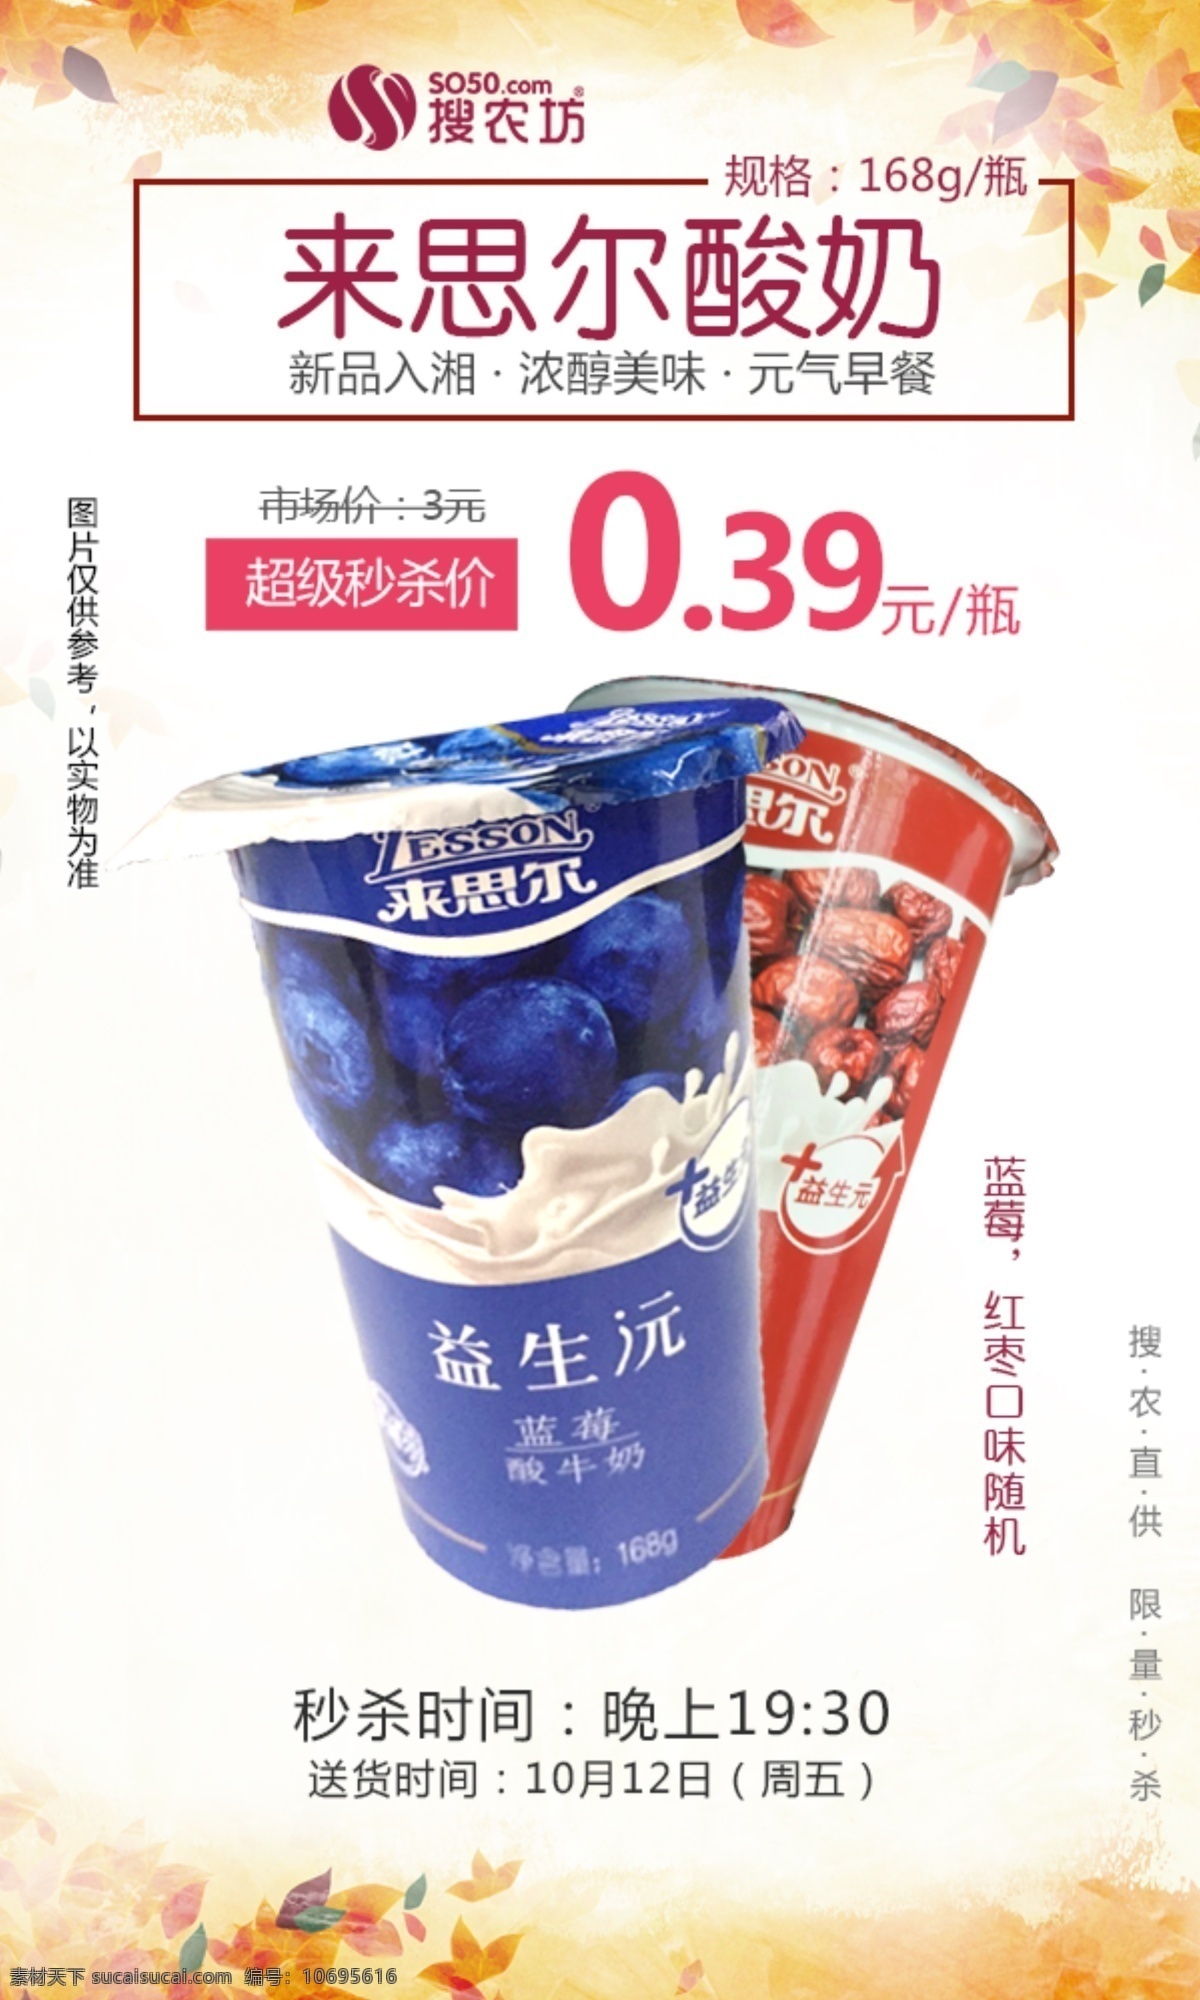 思尔 酸奶 超级 秒 杀 来思尔酸奶 超级秒杀 海报 海报图 社区团购 电商 秒杀模板 产品 相关 图